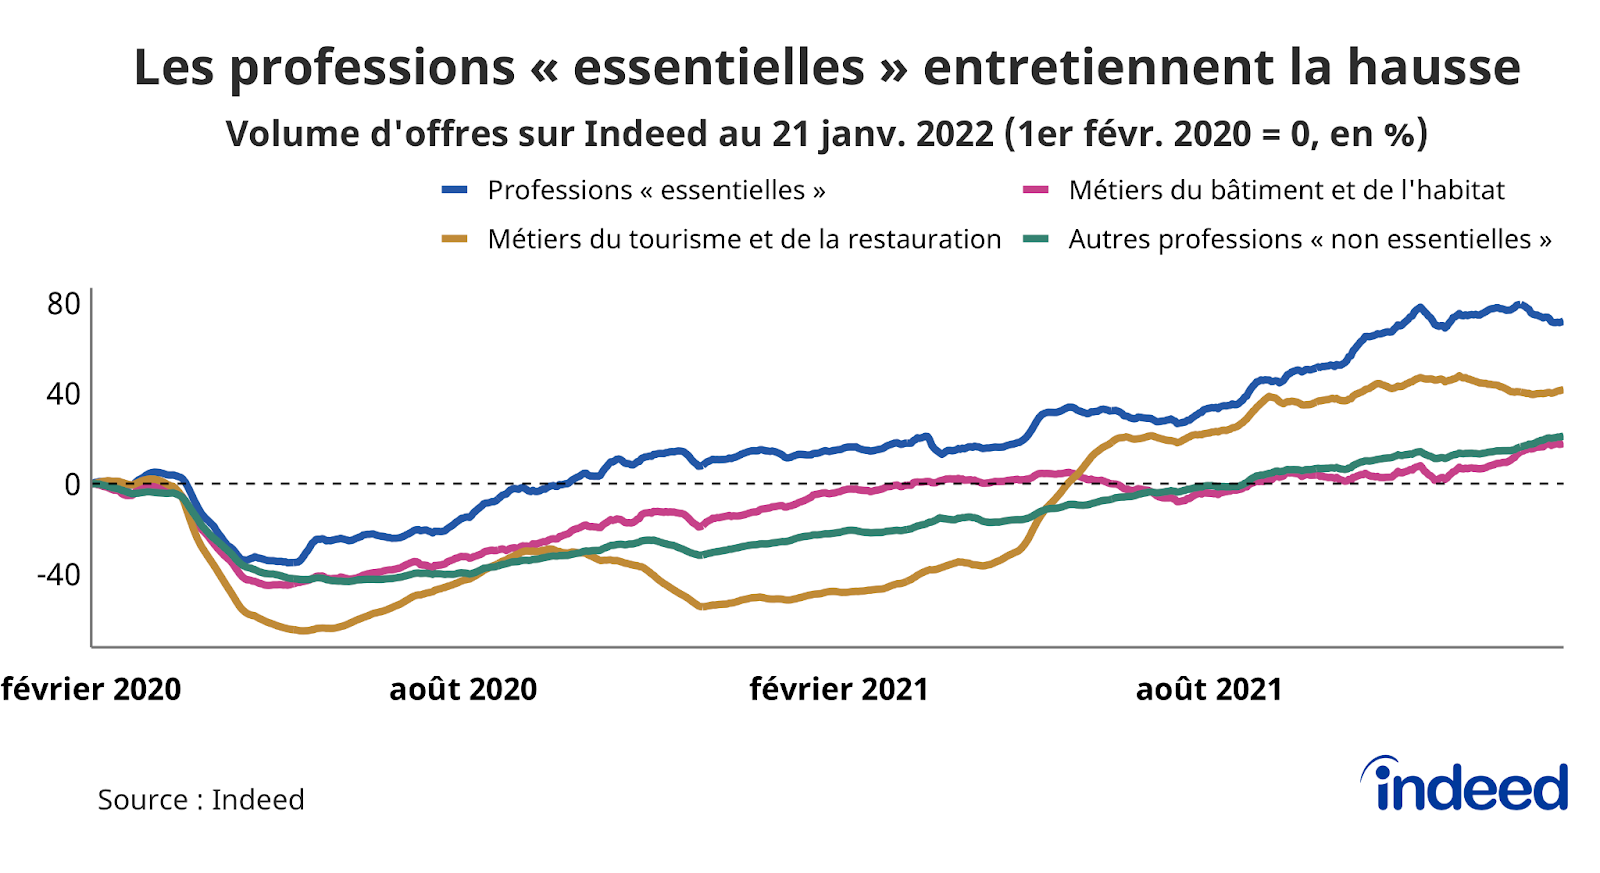 Le graphique en courbes illustre l’évolution, par rapport à la référence du 1er février 2020, du volume d’offres d’emploi (en abscisses) en fonction du temps (en ordonnées), jusqu’au 21 janvier 2022. 